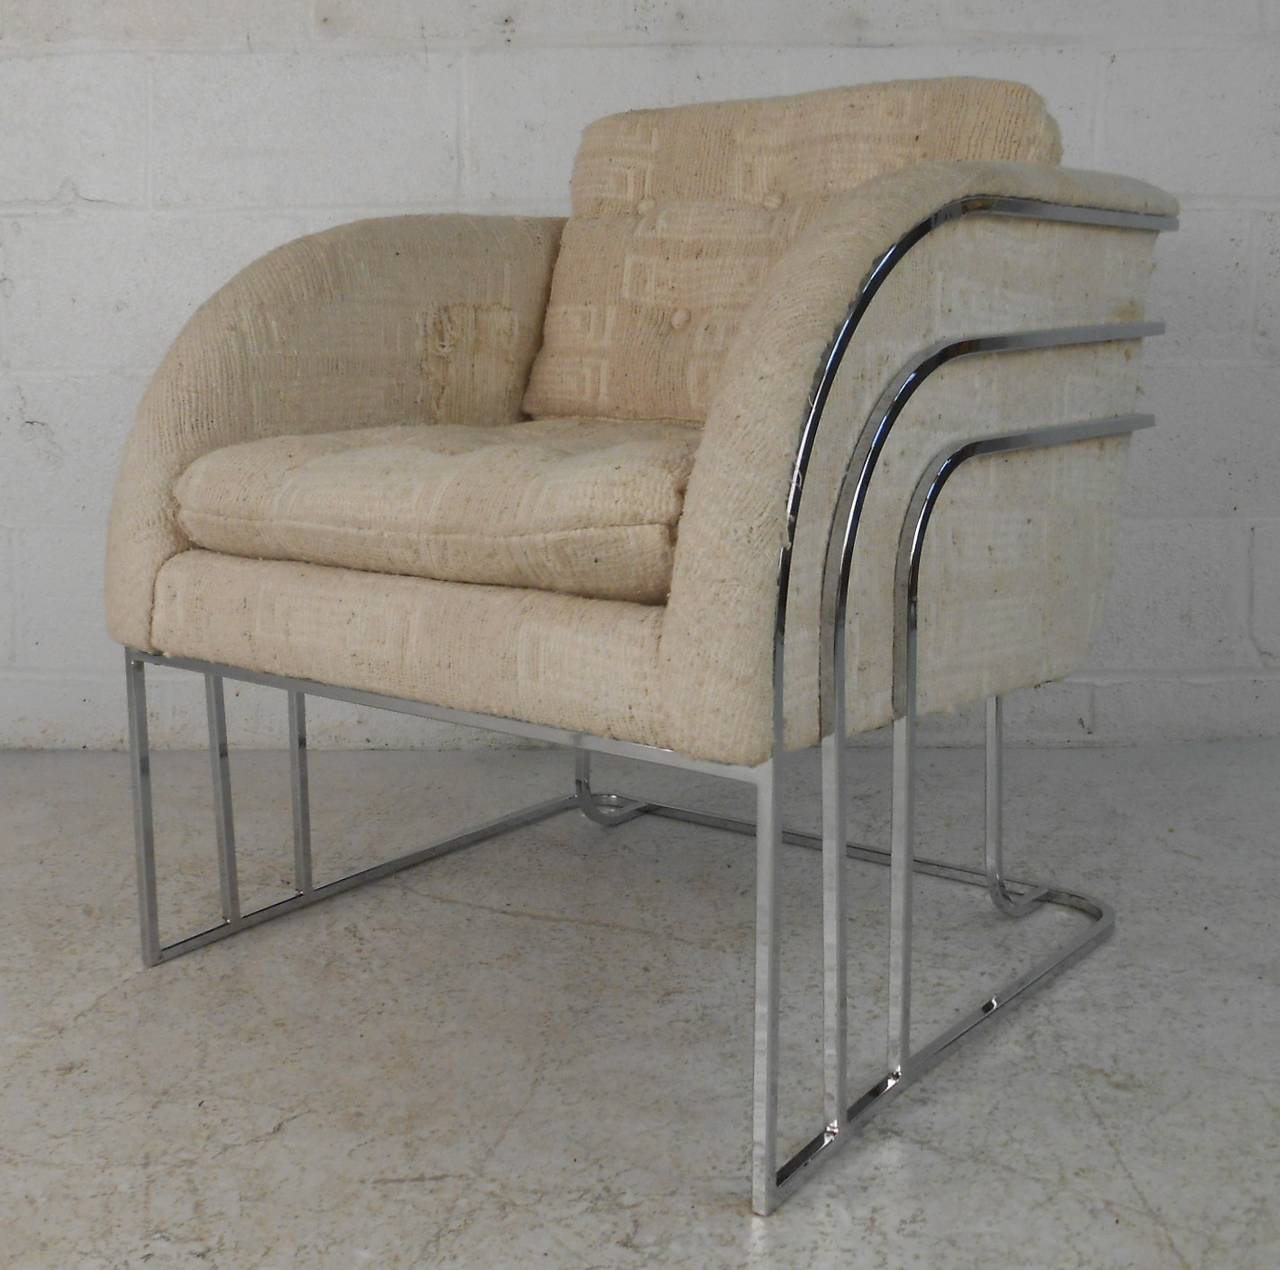 Sehr stilvoller Mid-Century Modern Lounge Chair mit geschwungenem Chromgestell von George Mergenov für Weiman/Warren Lloyd. Bitte bestätigen Sie den Standort des Artikels (NY oder NJ) mit dem Händler.